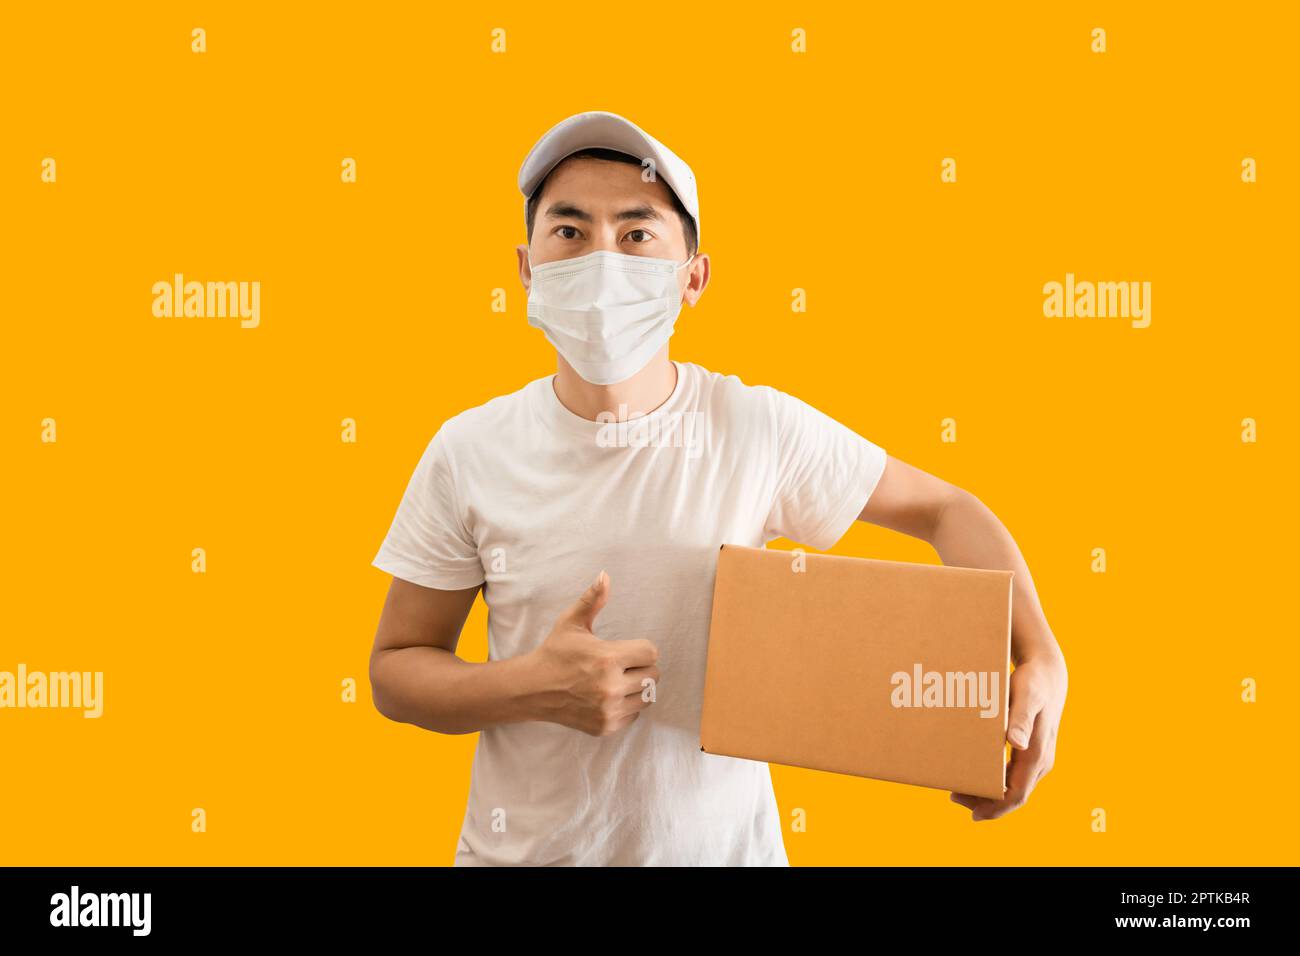 Giovane uomo asiatico con berretto e t-shirt bianca vuota che tiene la cassetta postale isolata su sfondo giallo. Servizio di consegna espresso. Foto Stock